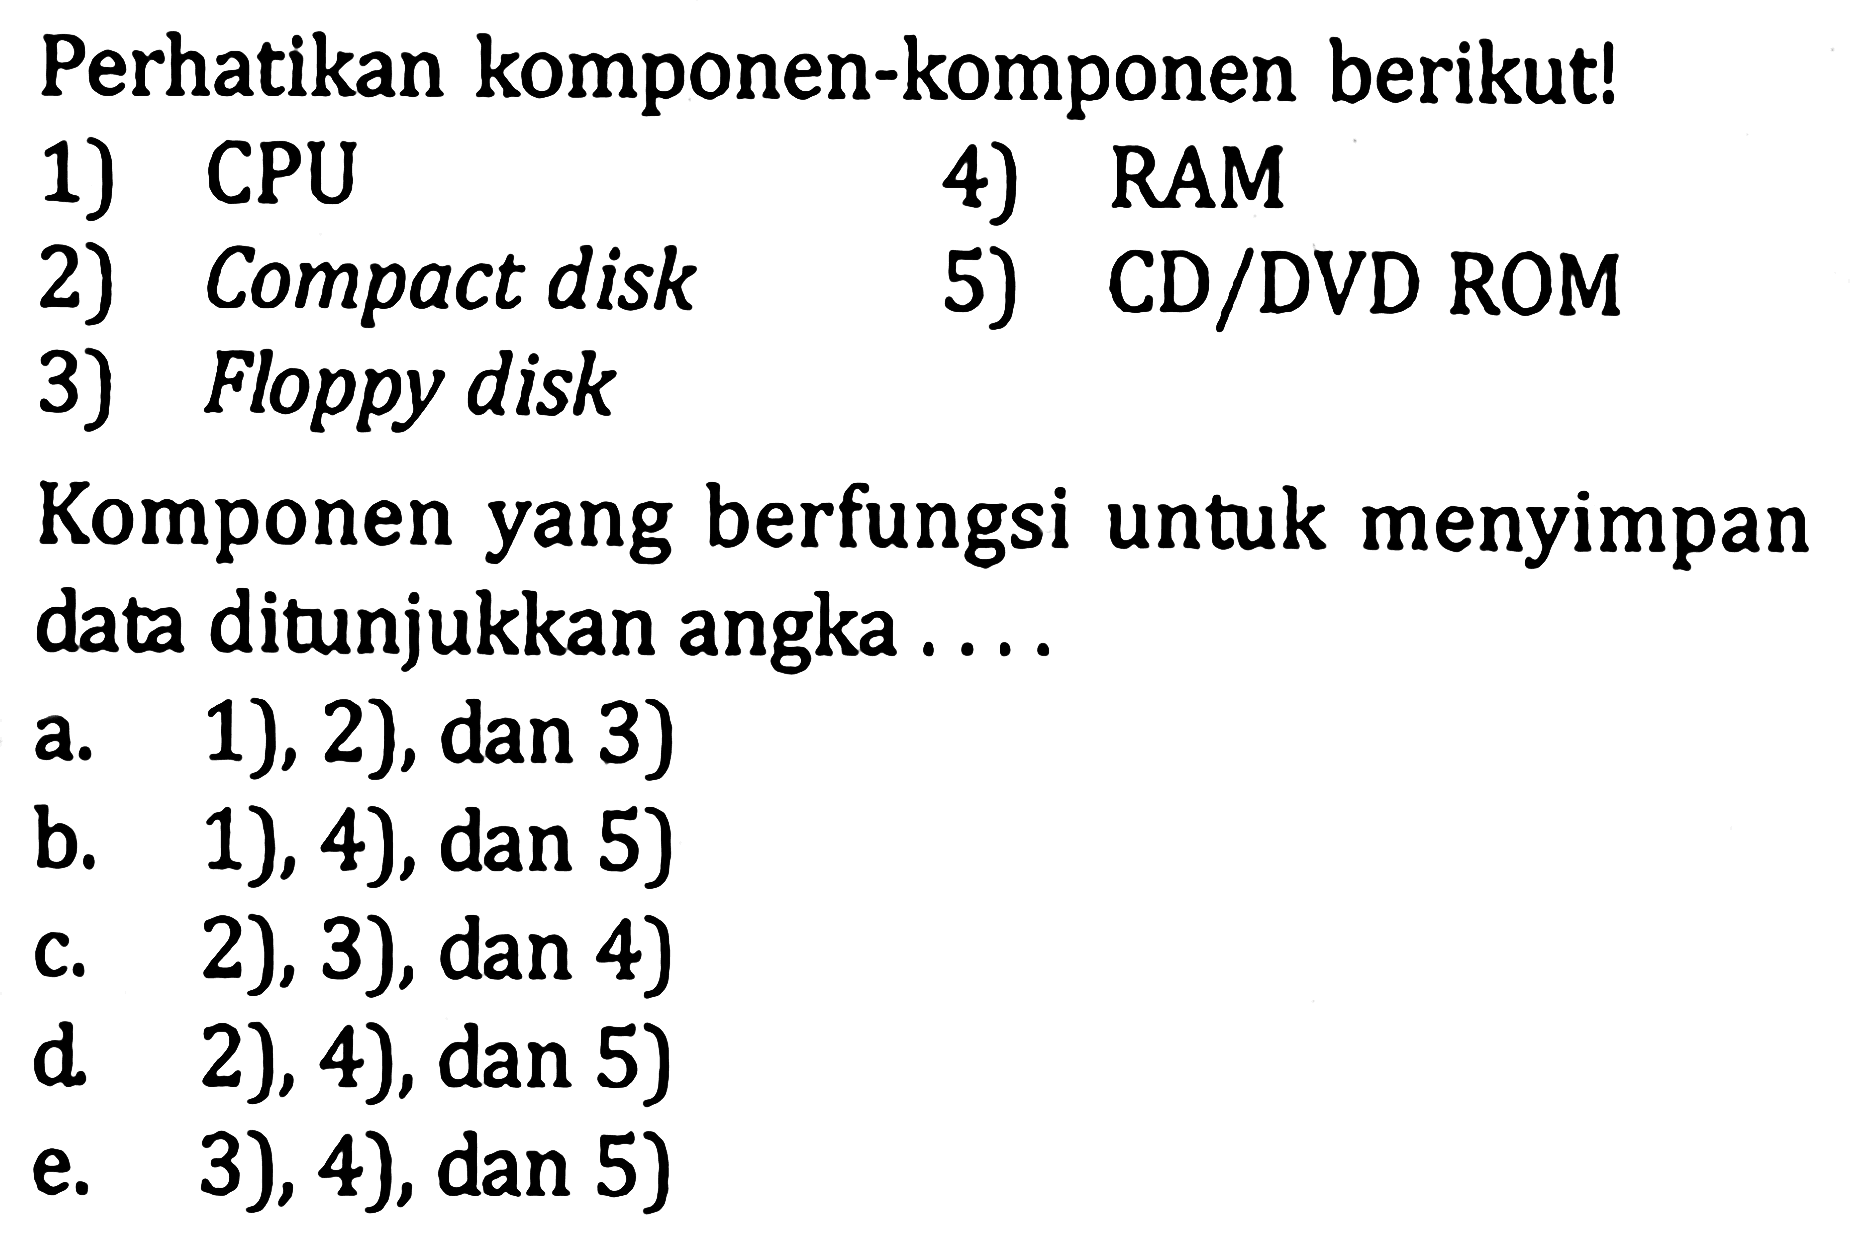 Perhatikan komponen-komponen berikut! 1) CPU 2) Compact disk 3) Floppy disk 4) RAM 5) CD/DVD ROM Komponen yang berfungsi untuk menyimpan data ditunjukkan angka .... 